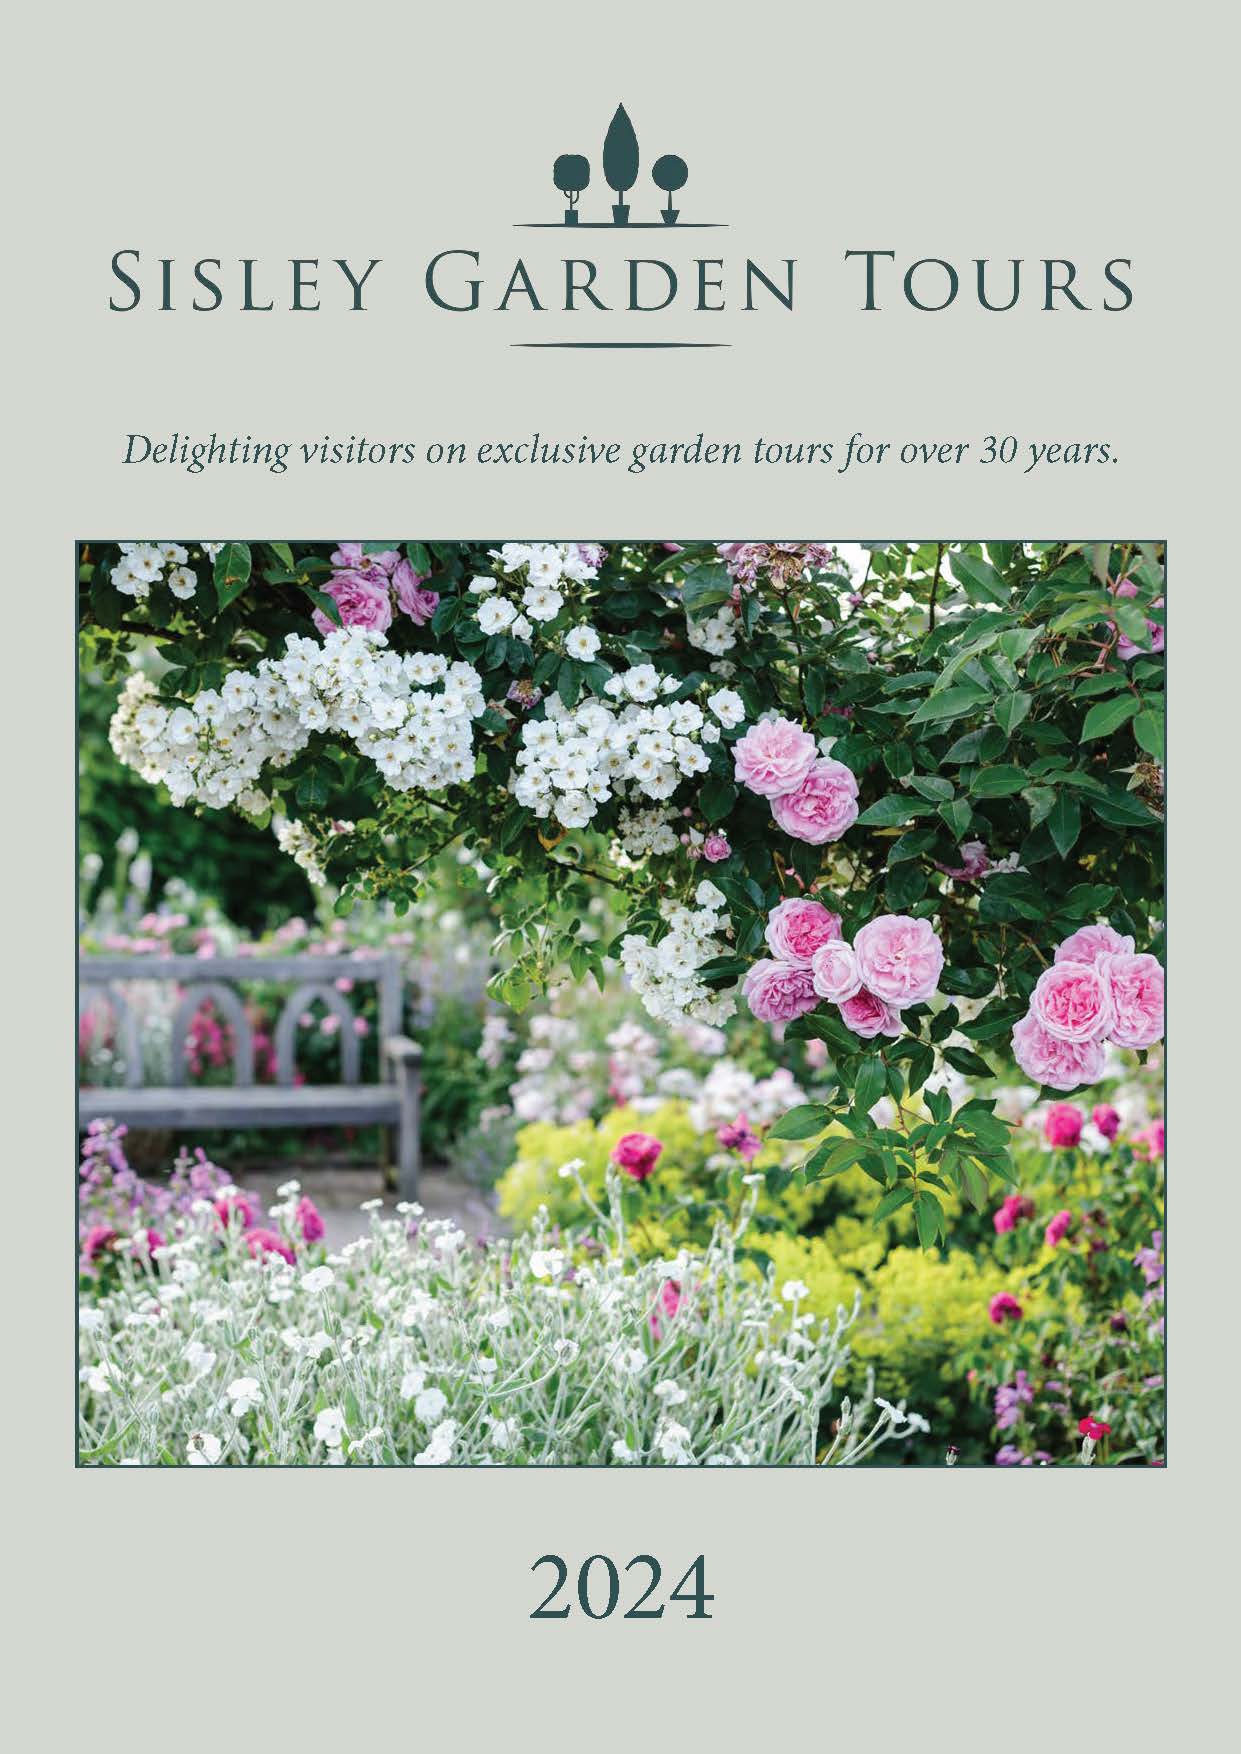 garden tour companies